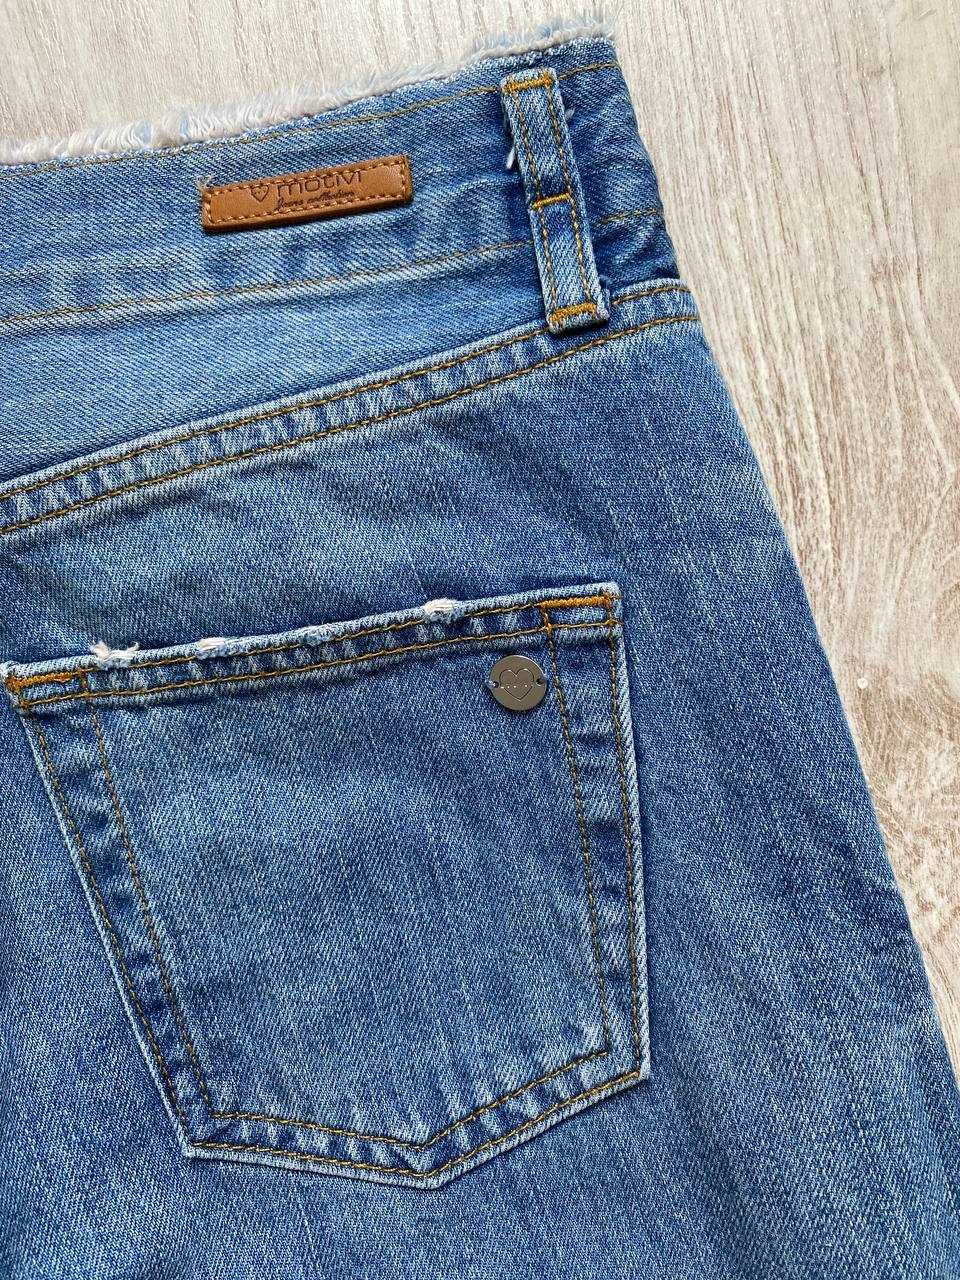 Жіночі джинси Motivi. Розмір 36/S. Прямі.